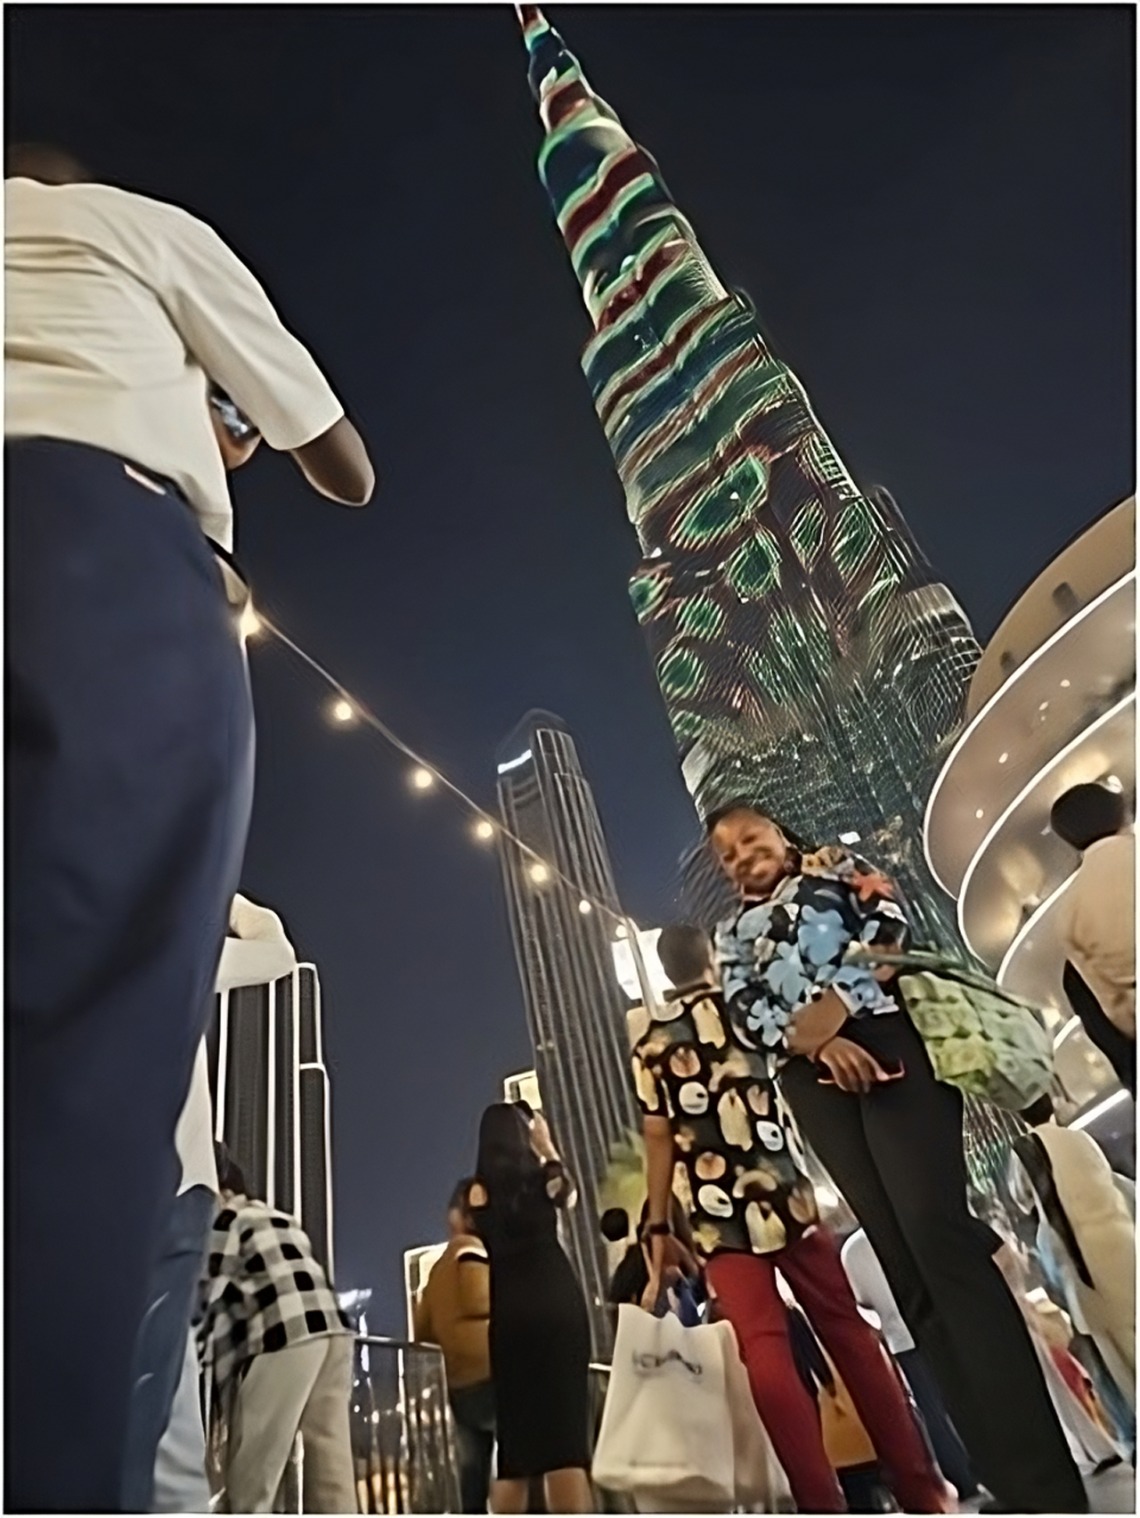 At Burj Khalifa